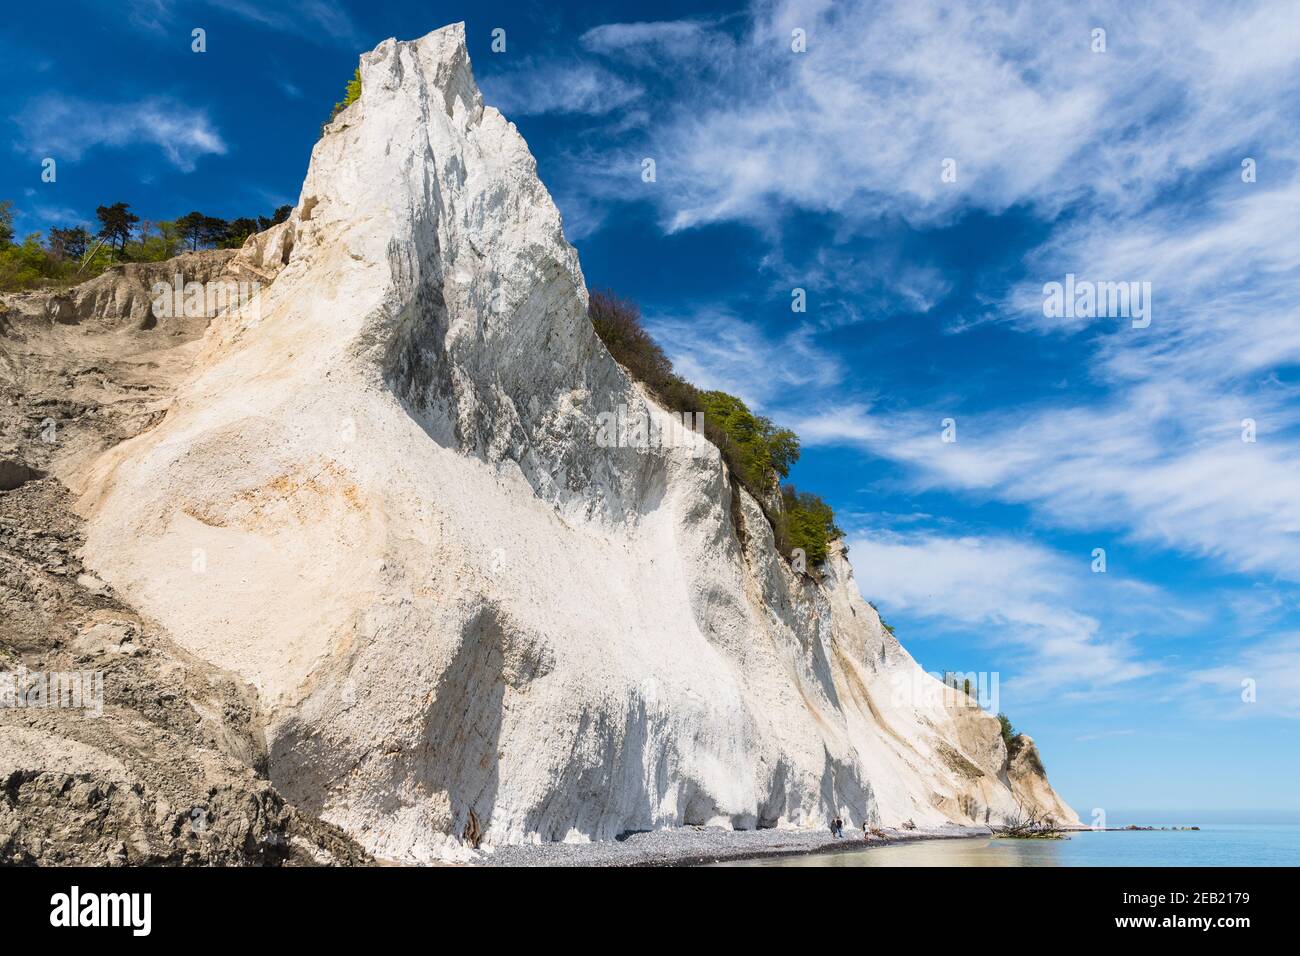 Moens klint craie falaises au Danemark Banque D'Images